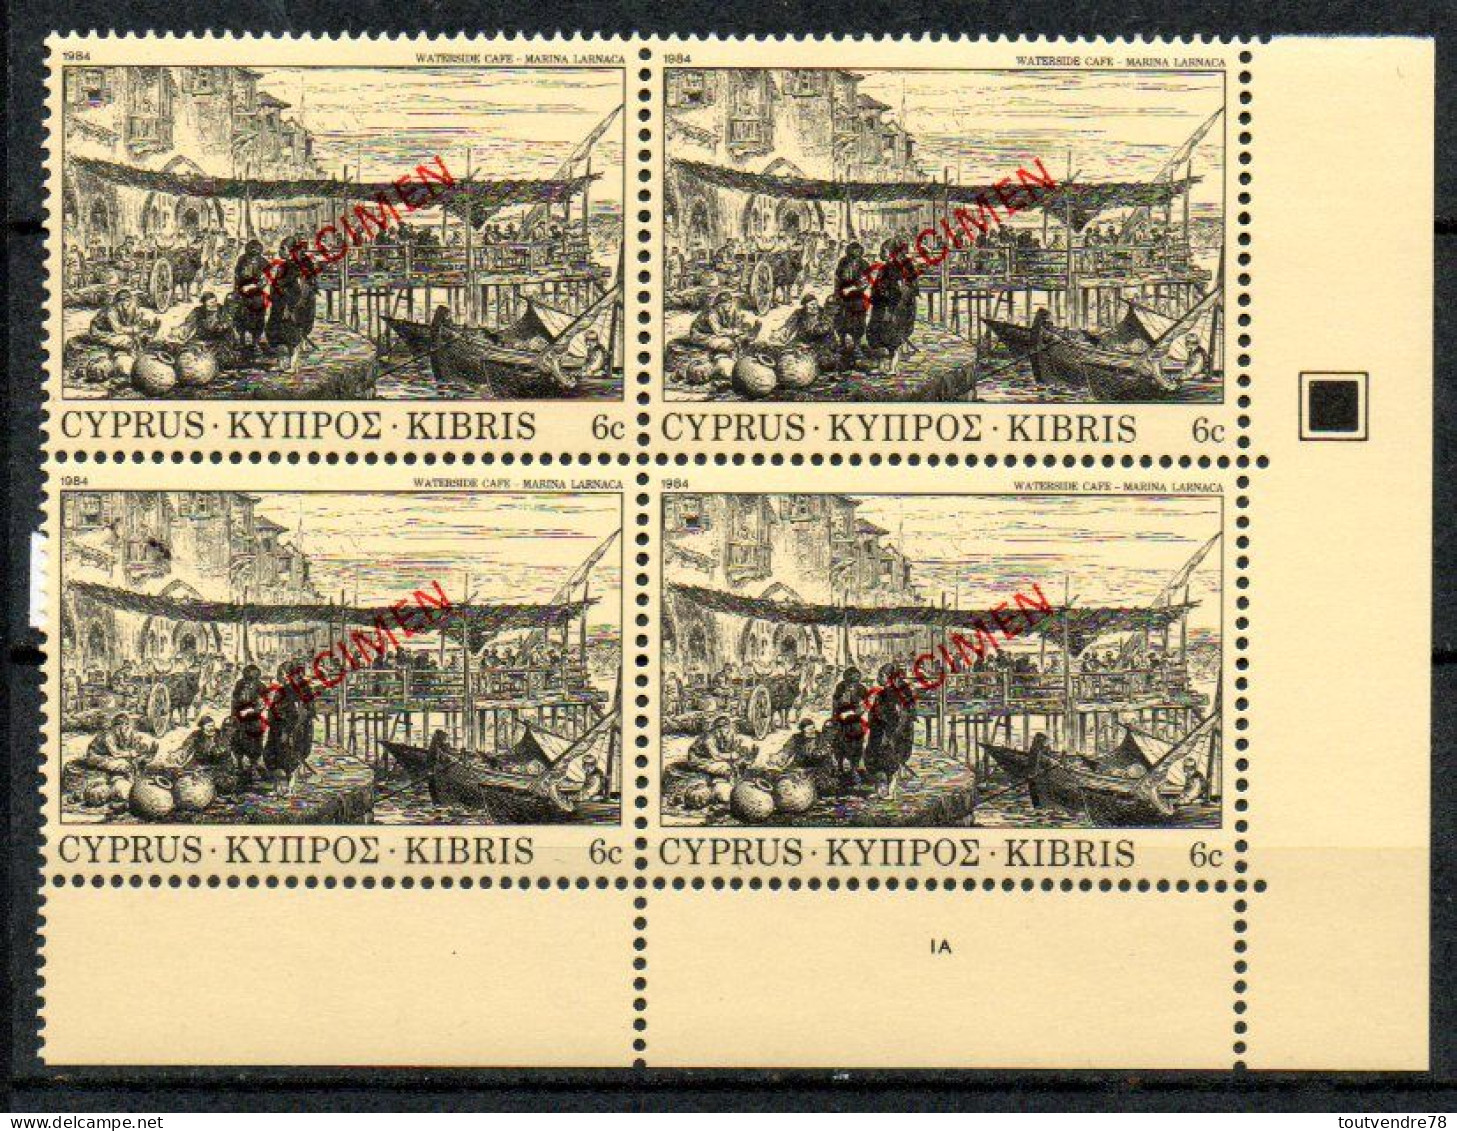 FJ2461 : Chypre Yvert N°603 Neuf Café Au Bord De La Mer 1984 Surchargé SPECIMEN - Unused Stamps